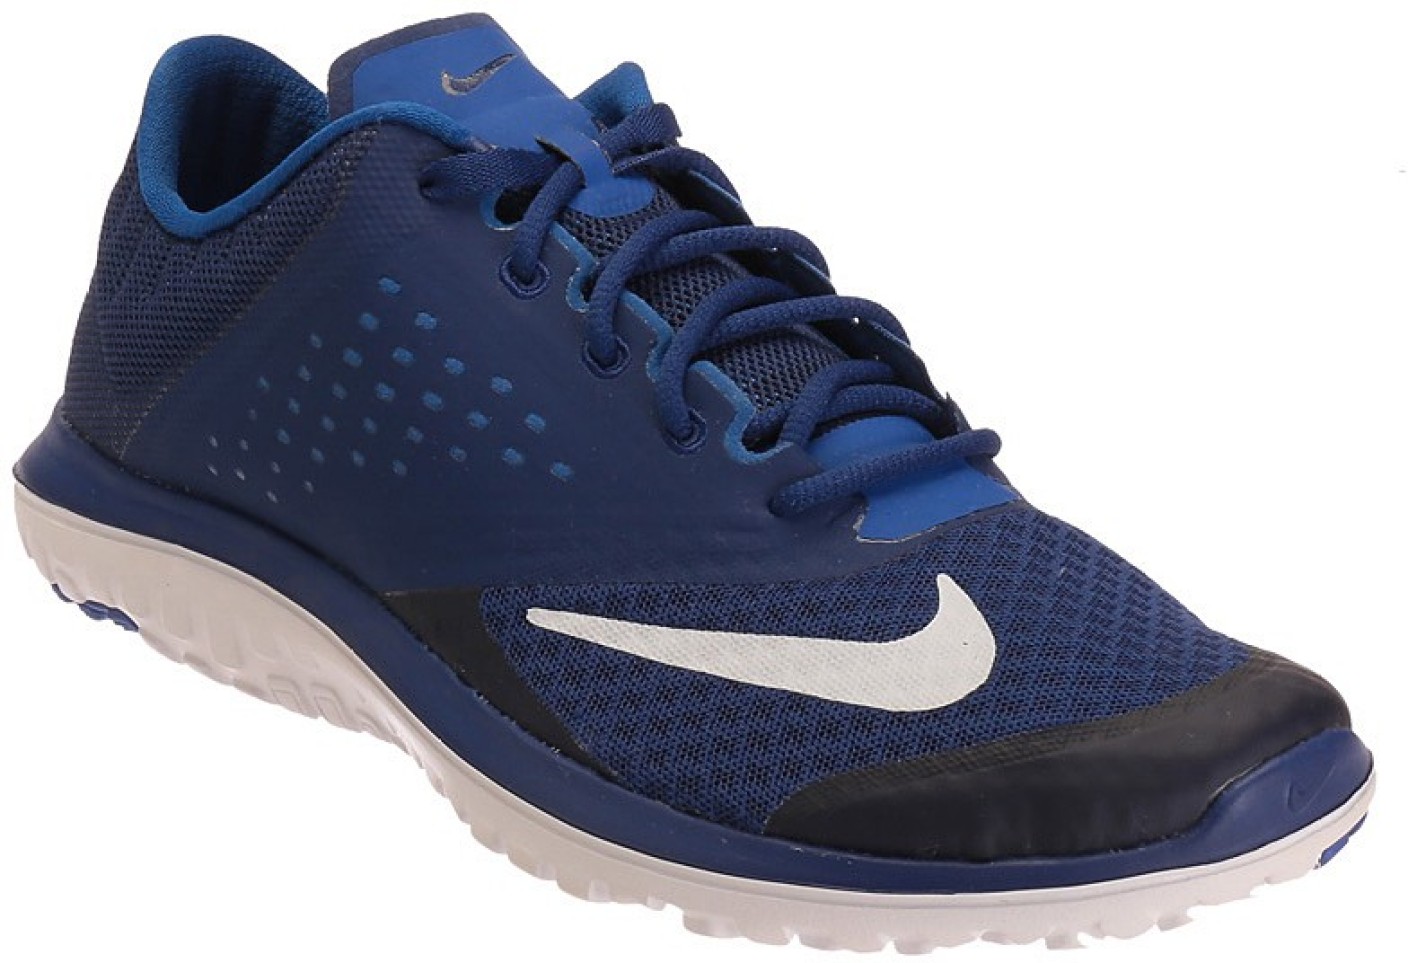 Nike FS LITE RUN 2 Running Shoes For Men - Buy DEEP ROYAL BLUE/WHITE ...